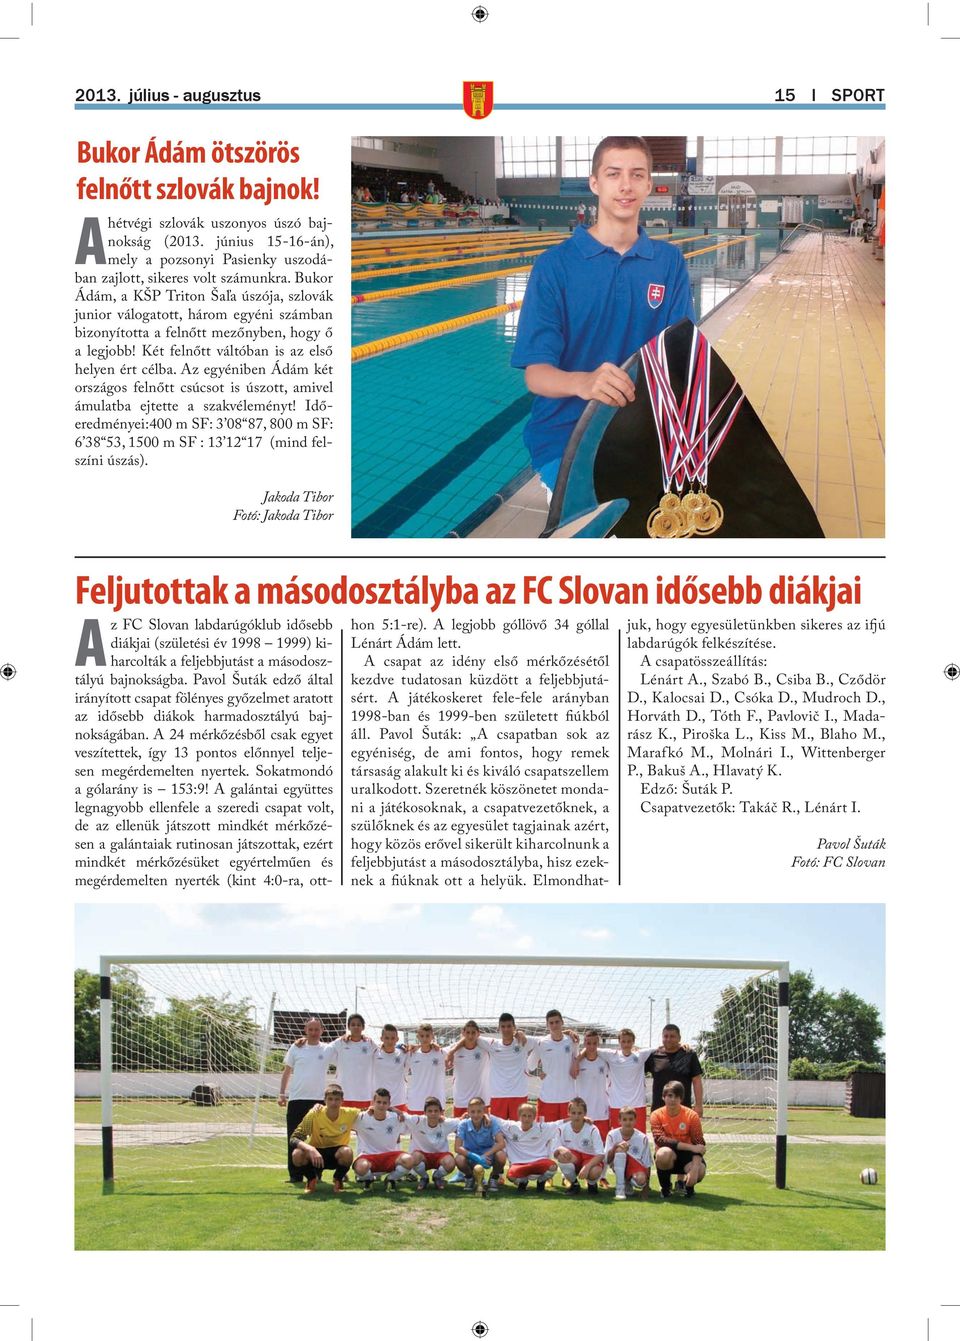 Bukor Ádám, a KŠP Triton Šaľa úszója, szlovák junior válogatott, három egyéni számban bizonyította a felnőtt mezőnyben, hogy ő a legjobb! Két felnőtt váltóban is az első helyen ért célba.